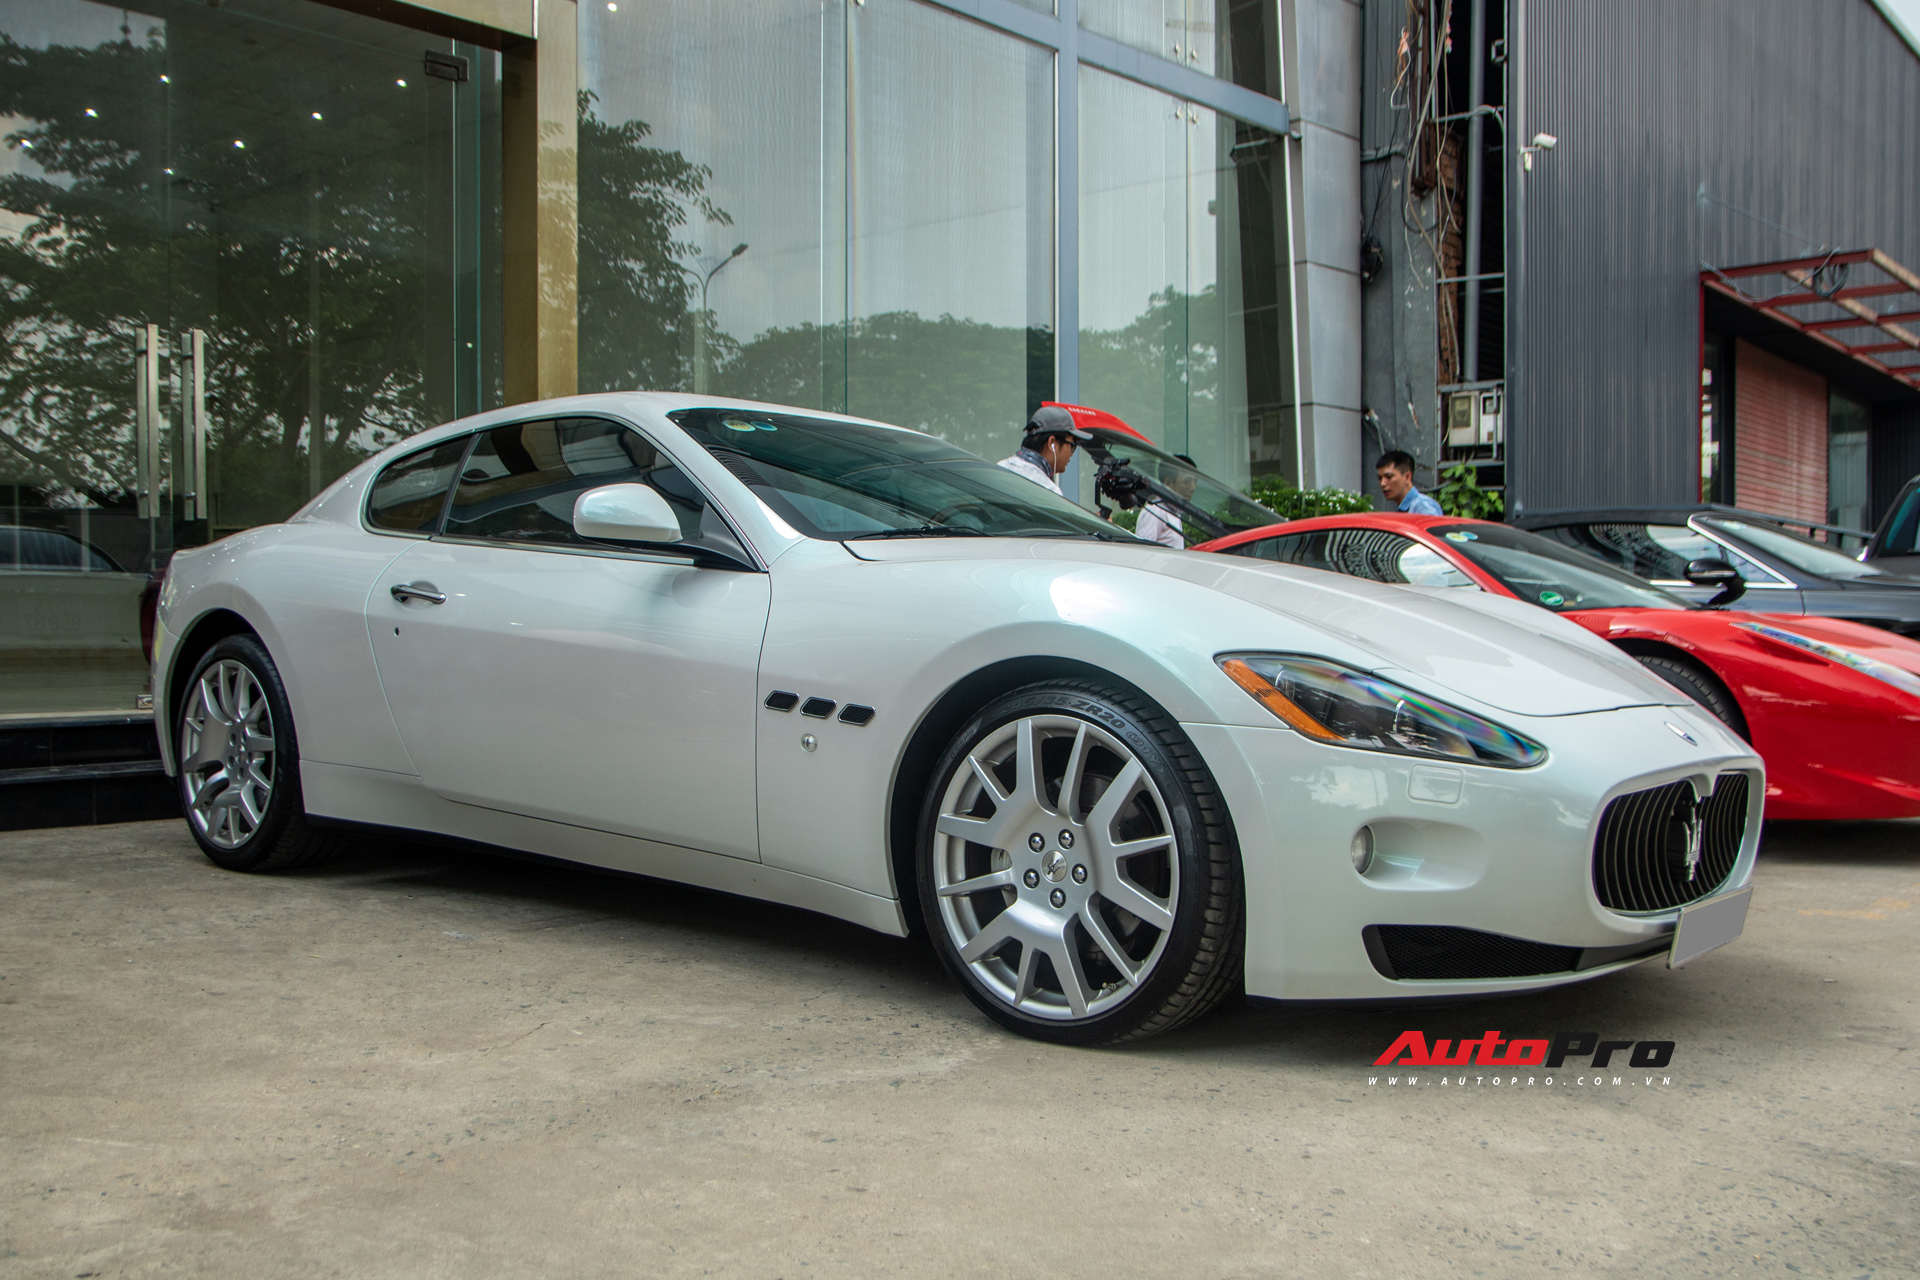 Kỳ công nửa tháng đổi màu Maserati GranTurismo với màu sơn tán sắc lấy cảm hứng từ hypercar Aston Martin Valhalla - Ảnh 6.